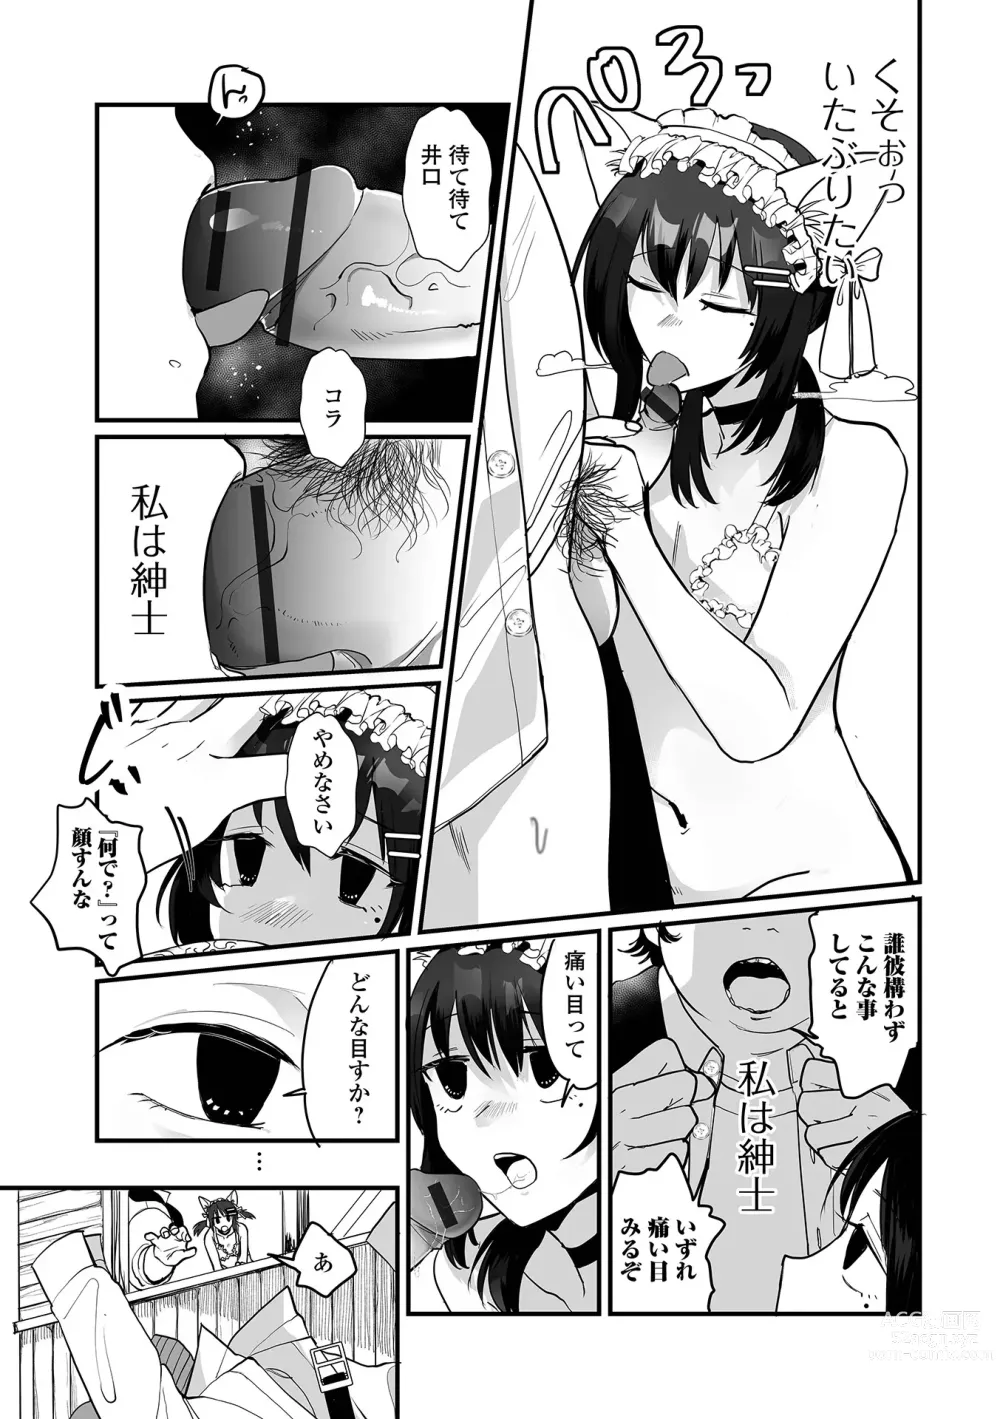 Page 9 of manga Gekkan Web Otoko no Ko-llection! S Vol. 95